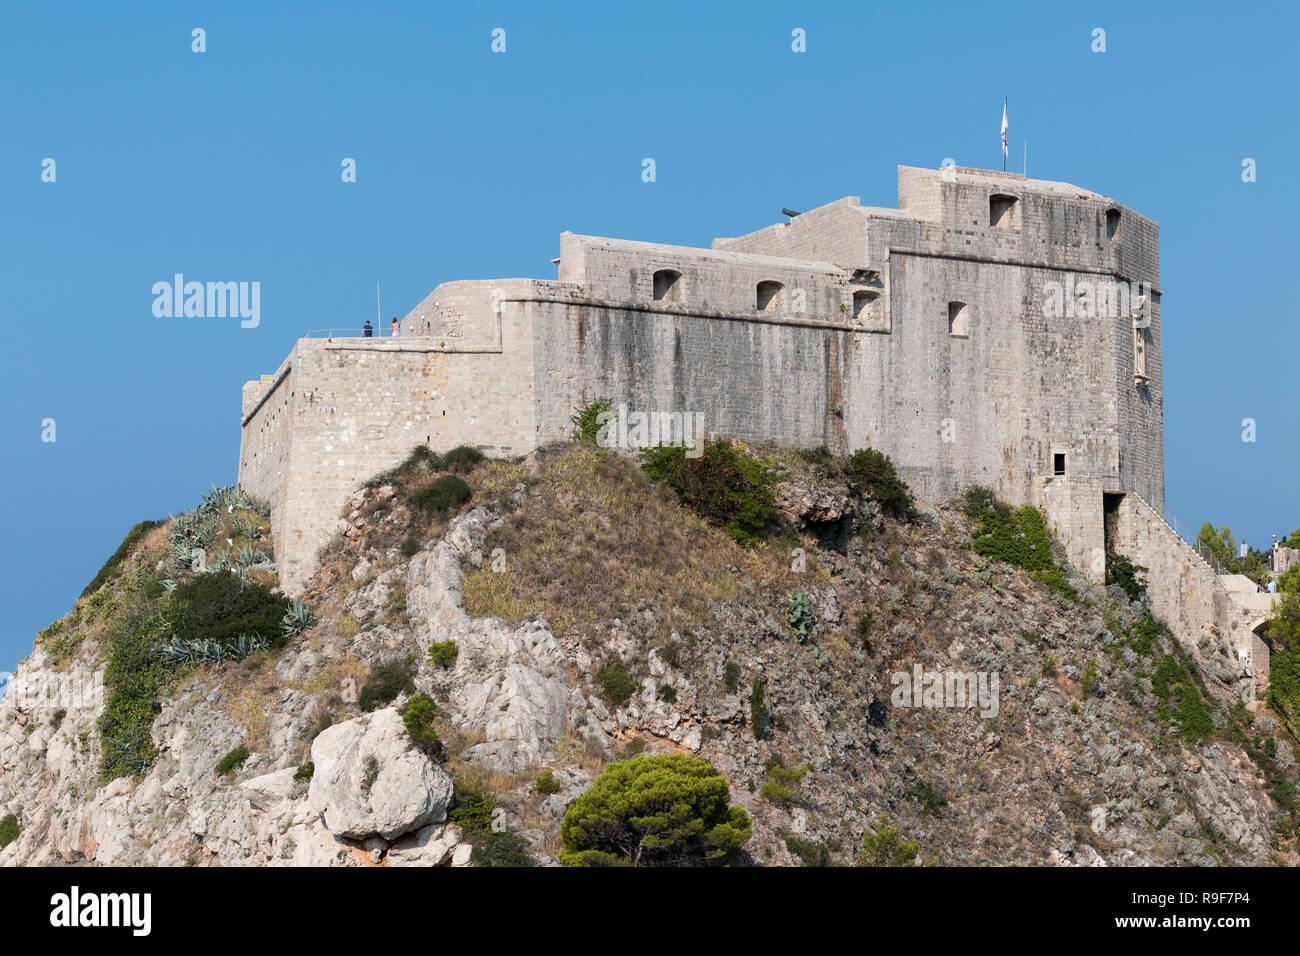 Fort verwendet als die Roten im Spiel der Throne, Dubrovnik, Kroatien Halten Stockfoto